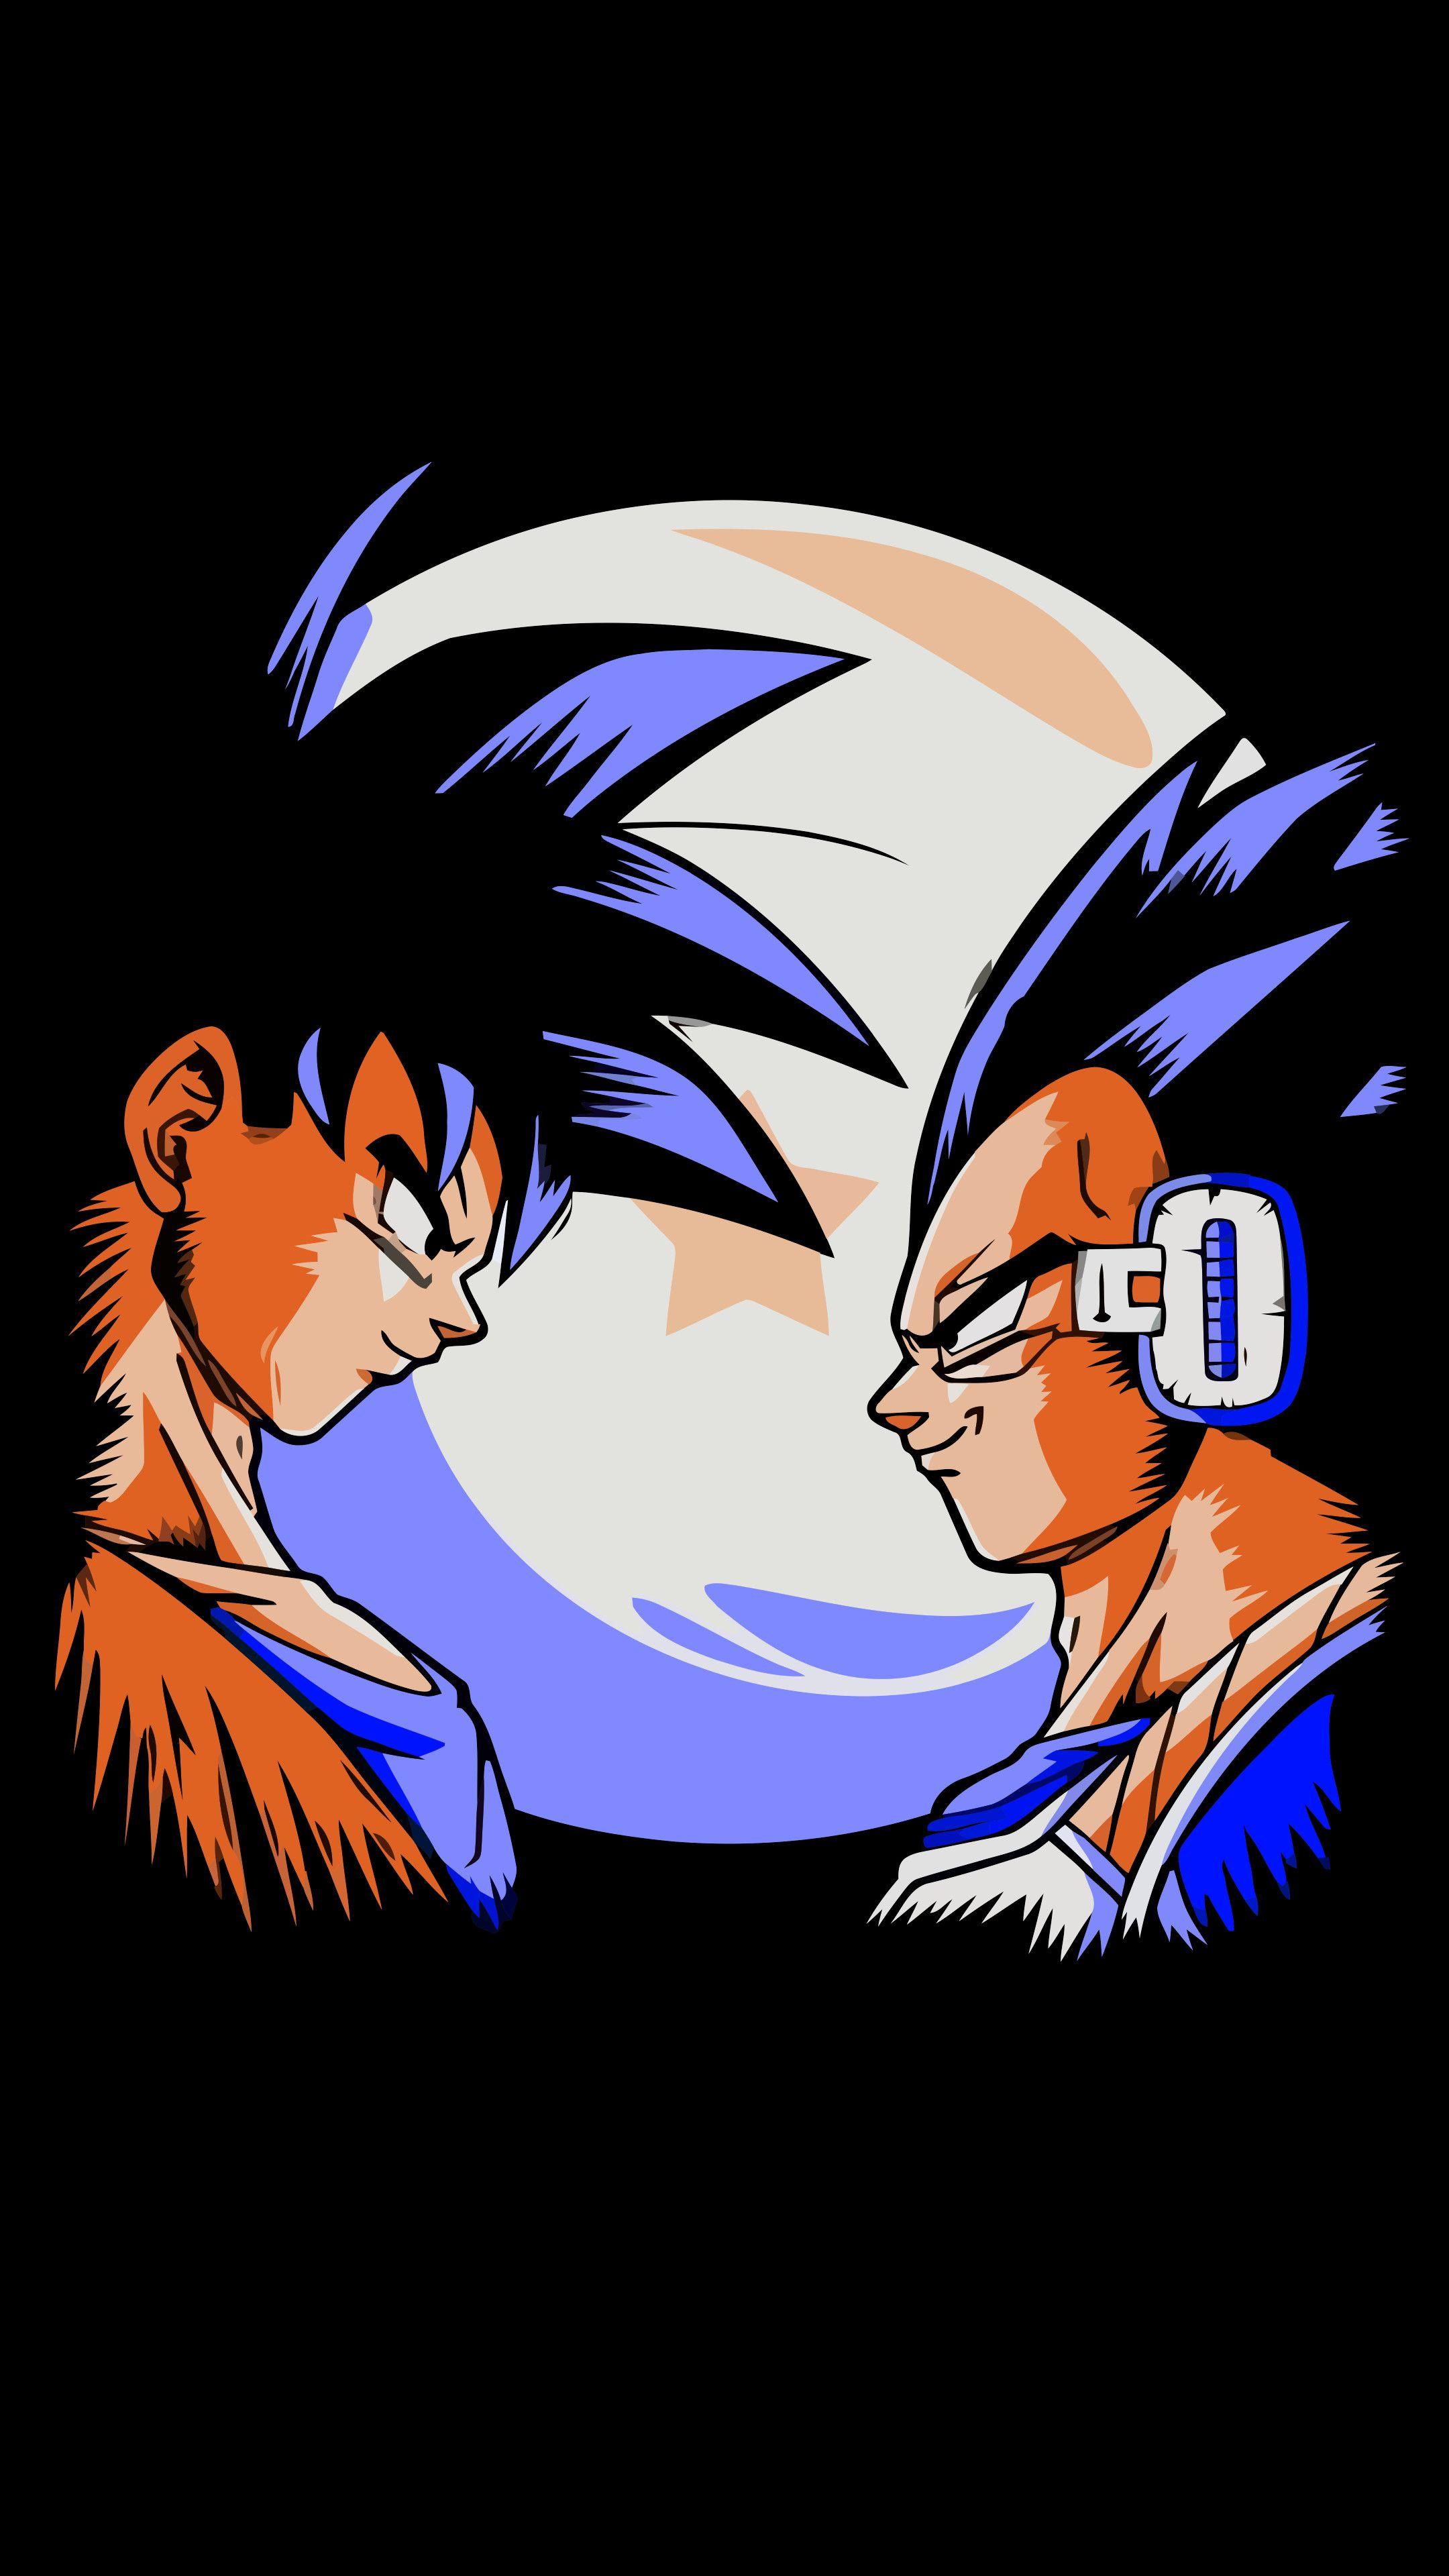 Dragon Ball Super - Goku and Vegeta